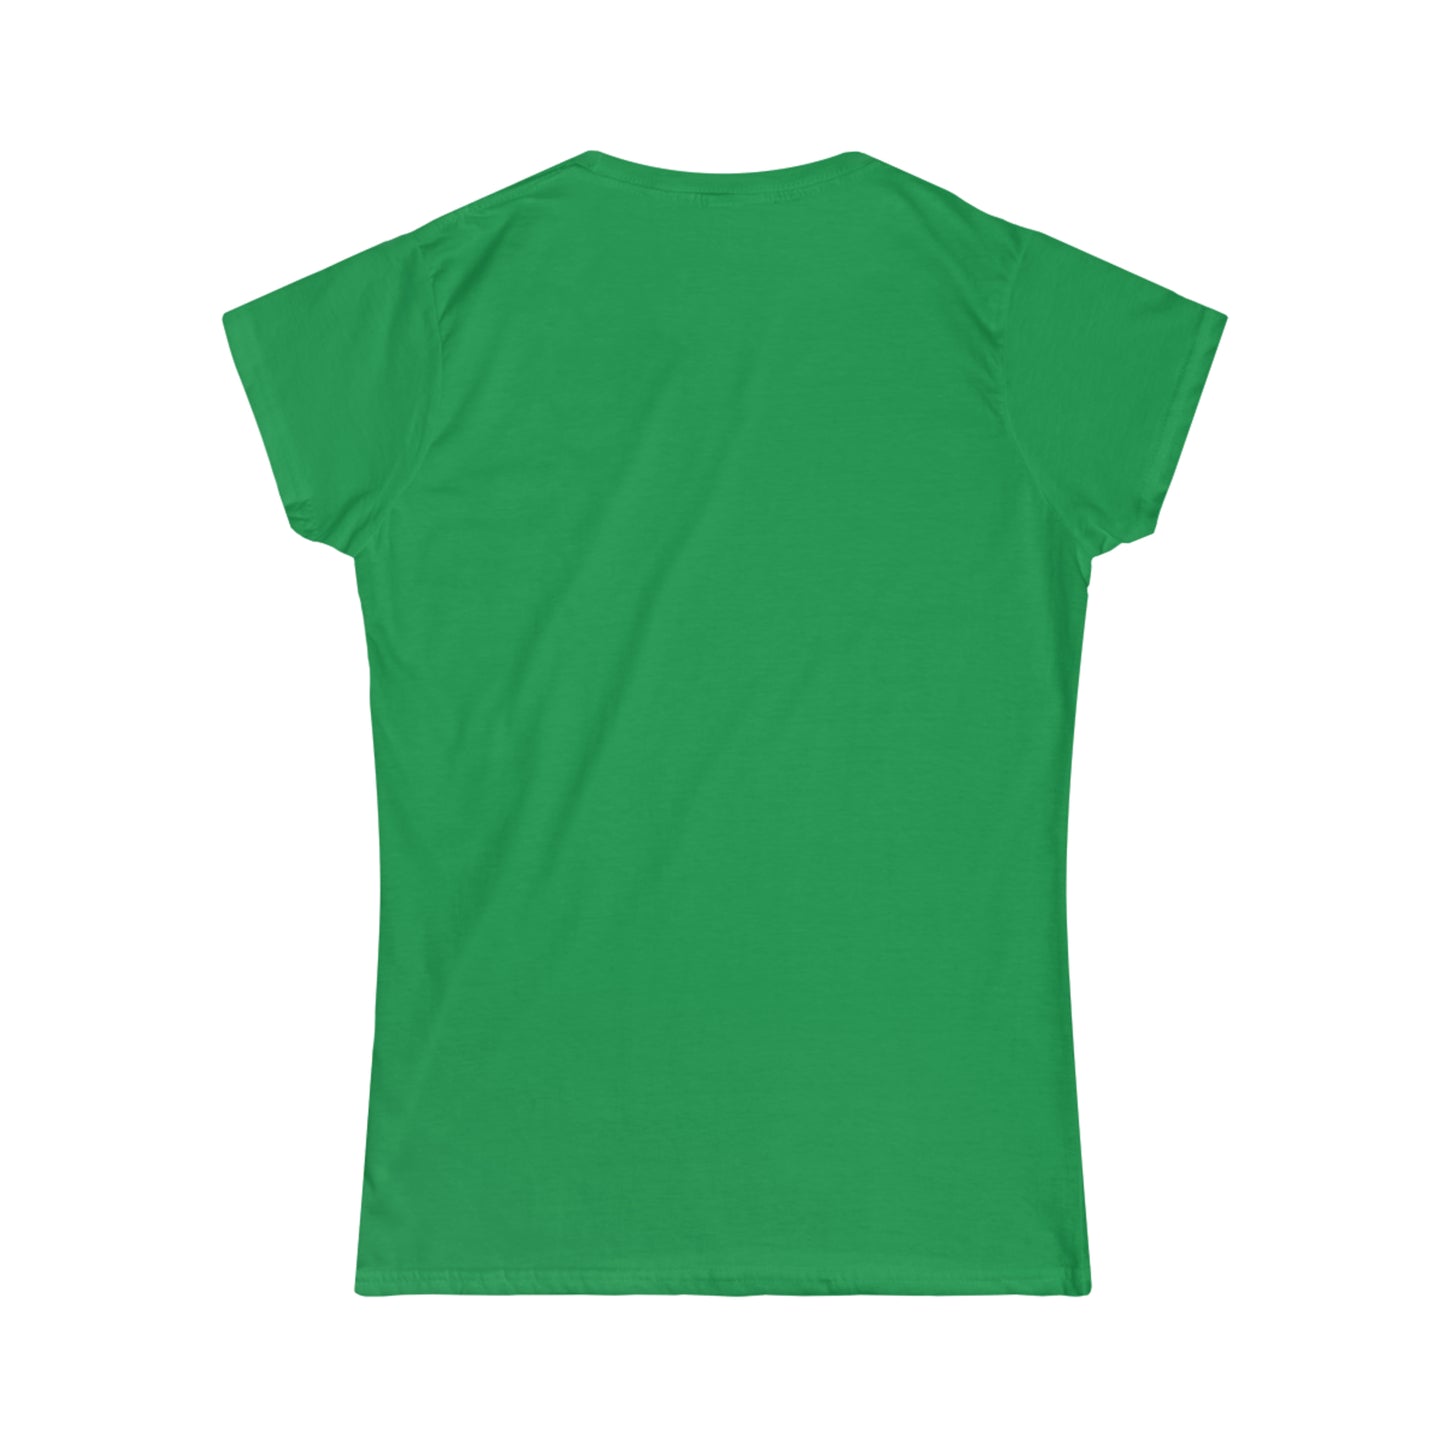 Aquí hay Tema - Camiseta de Mujer - Women's Softstyle Tee